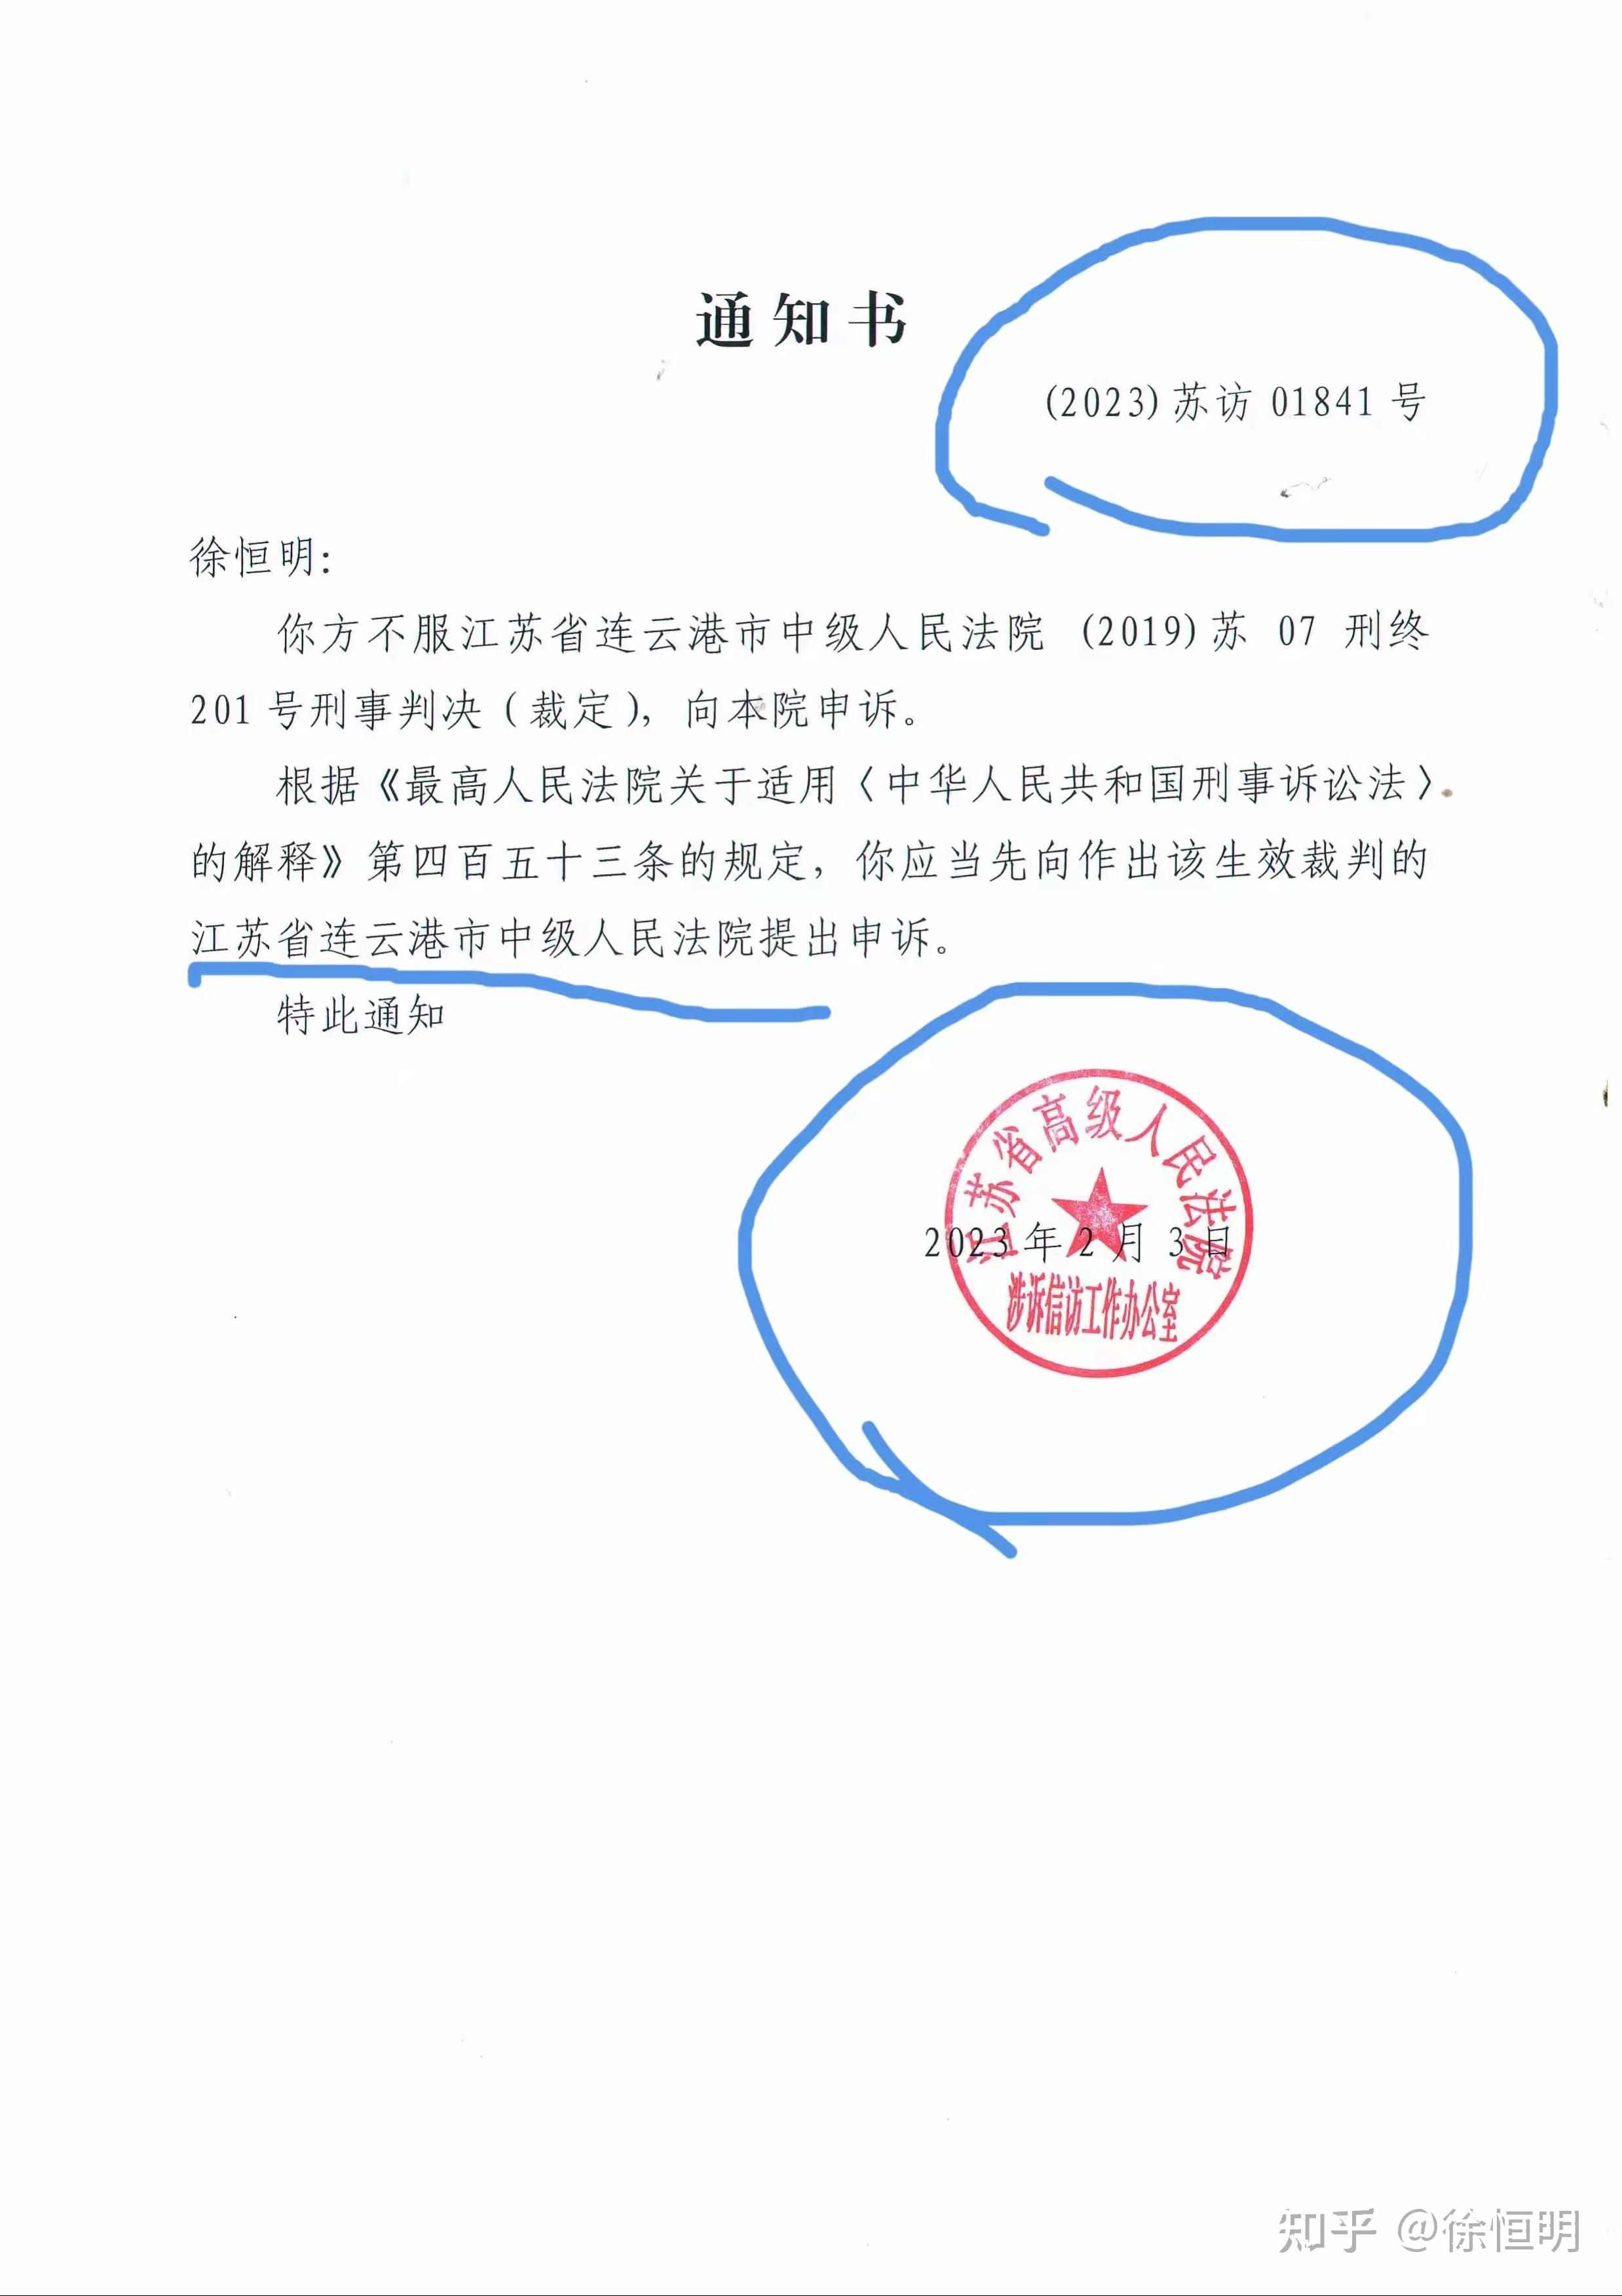 告知向江苏省连云港市中级人民法院提出申诉